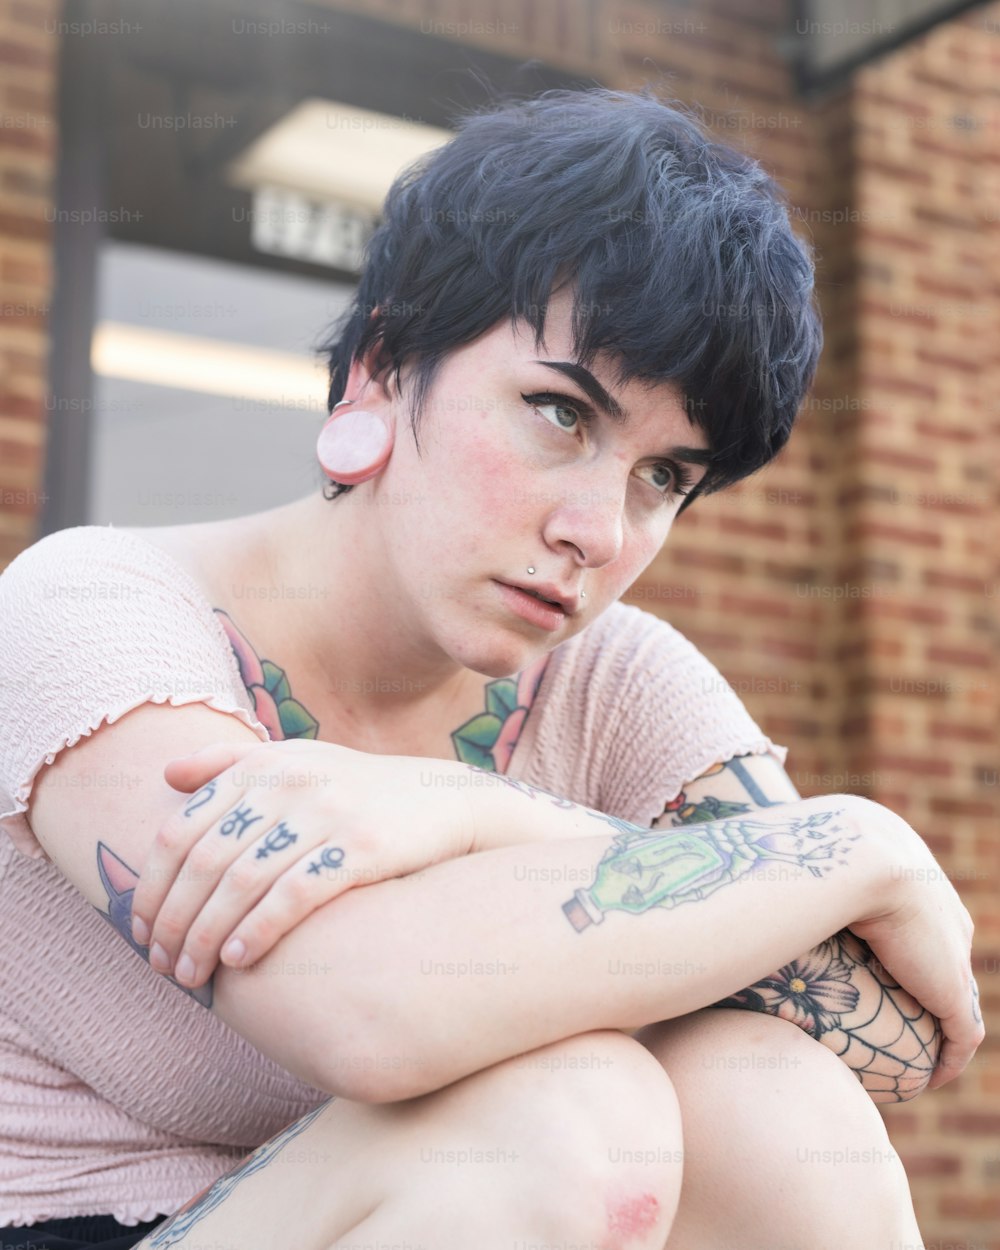 Una mujer con tatuajes sentada en un banco